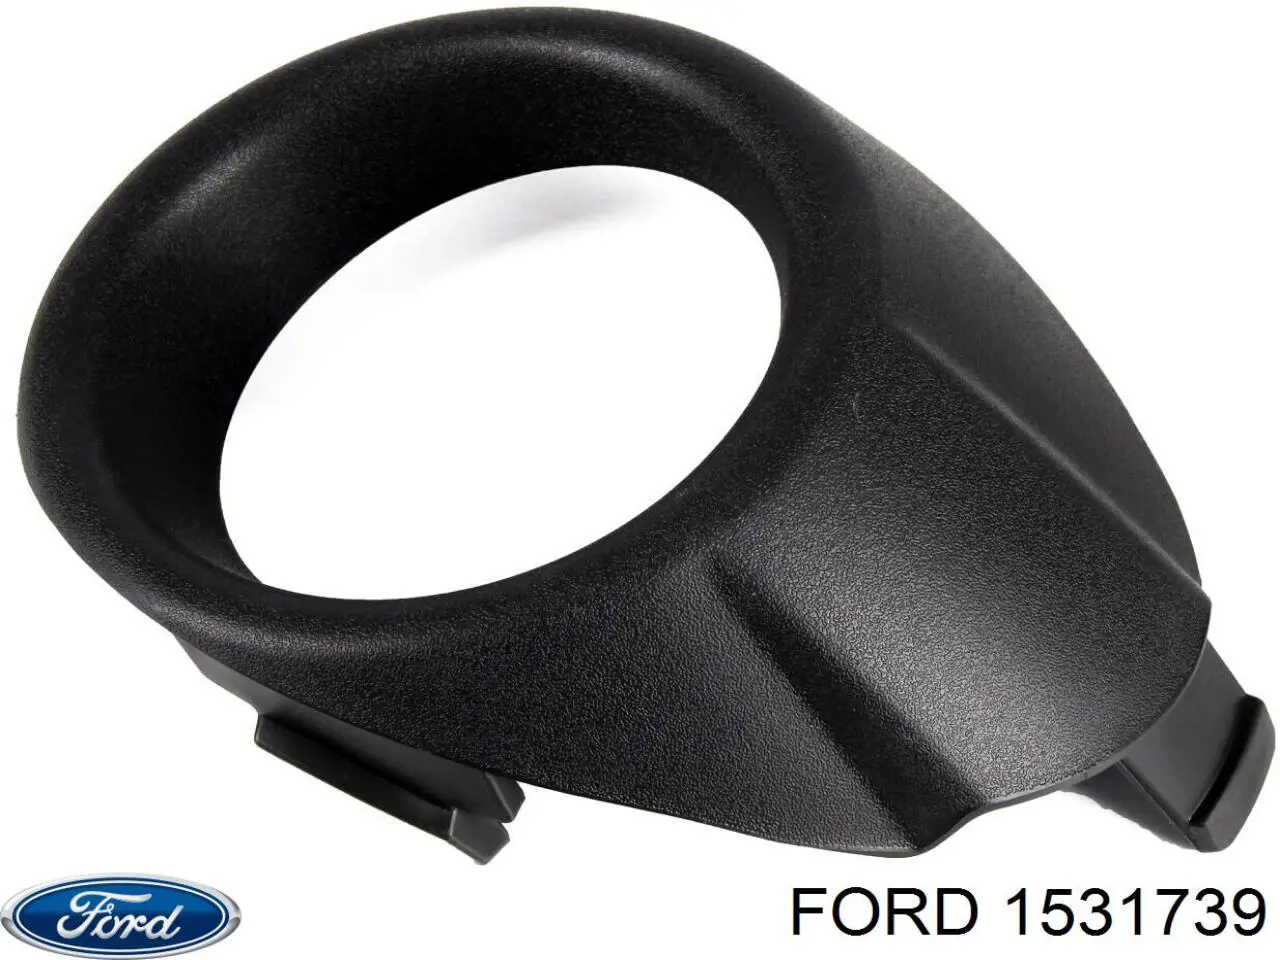 1531739 Ford ободок (окантовка фары противотуманной правой)